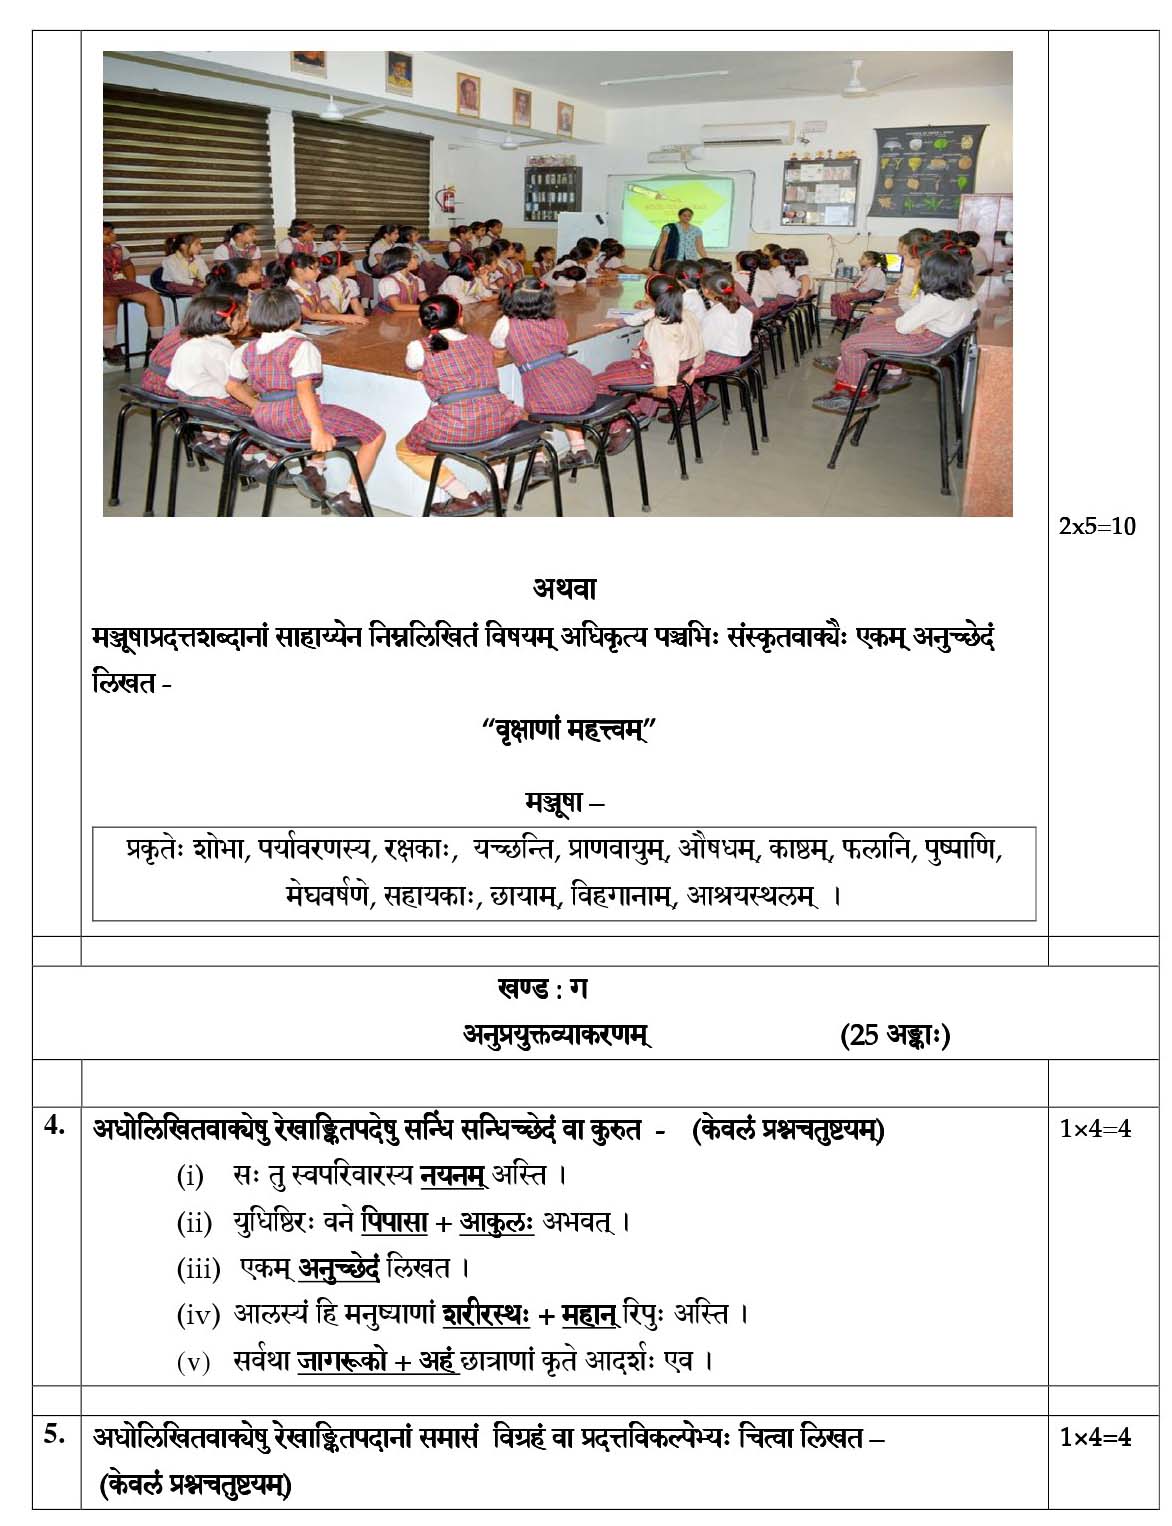 Sanskrit CBSE Class X Sample Question Paper 2018-19 - Image 4